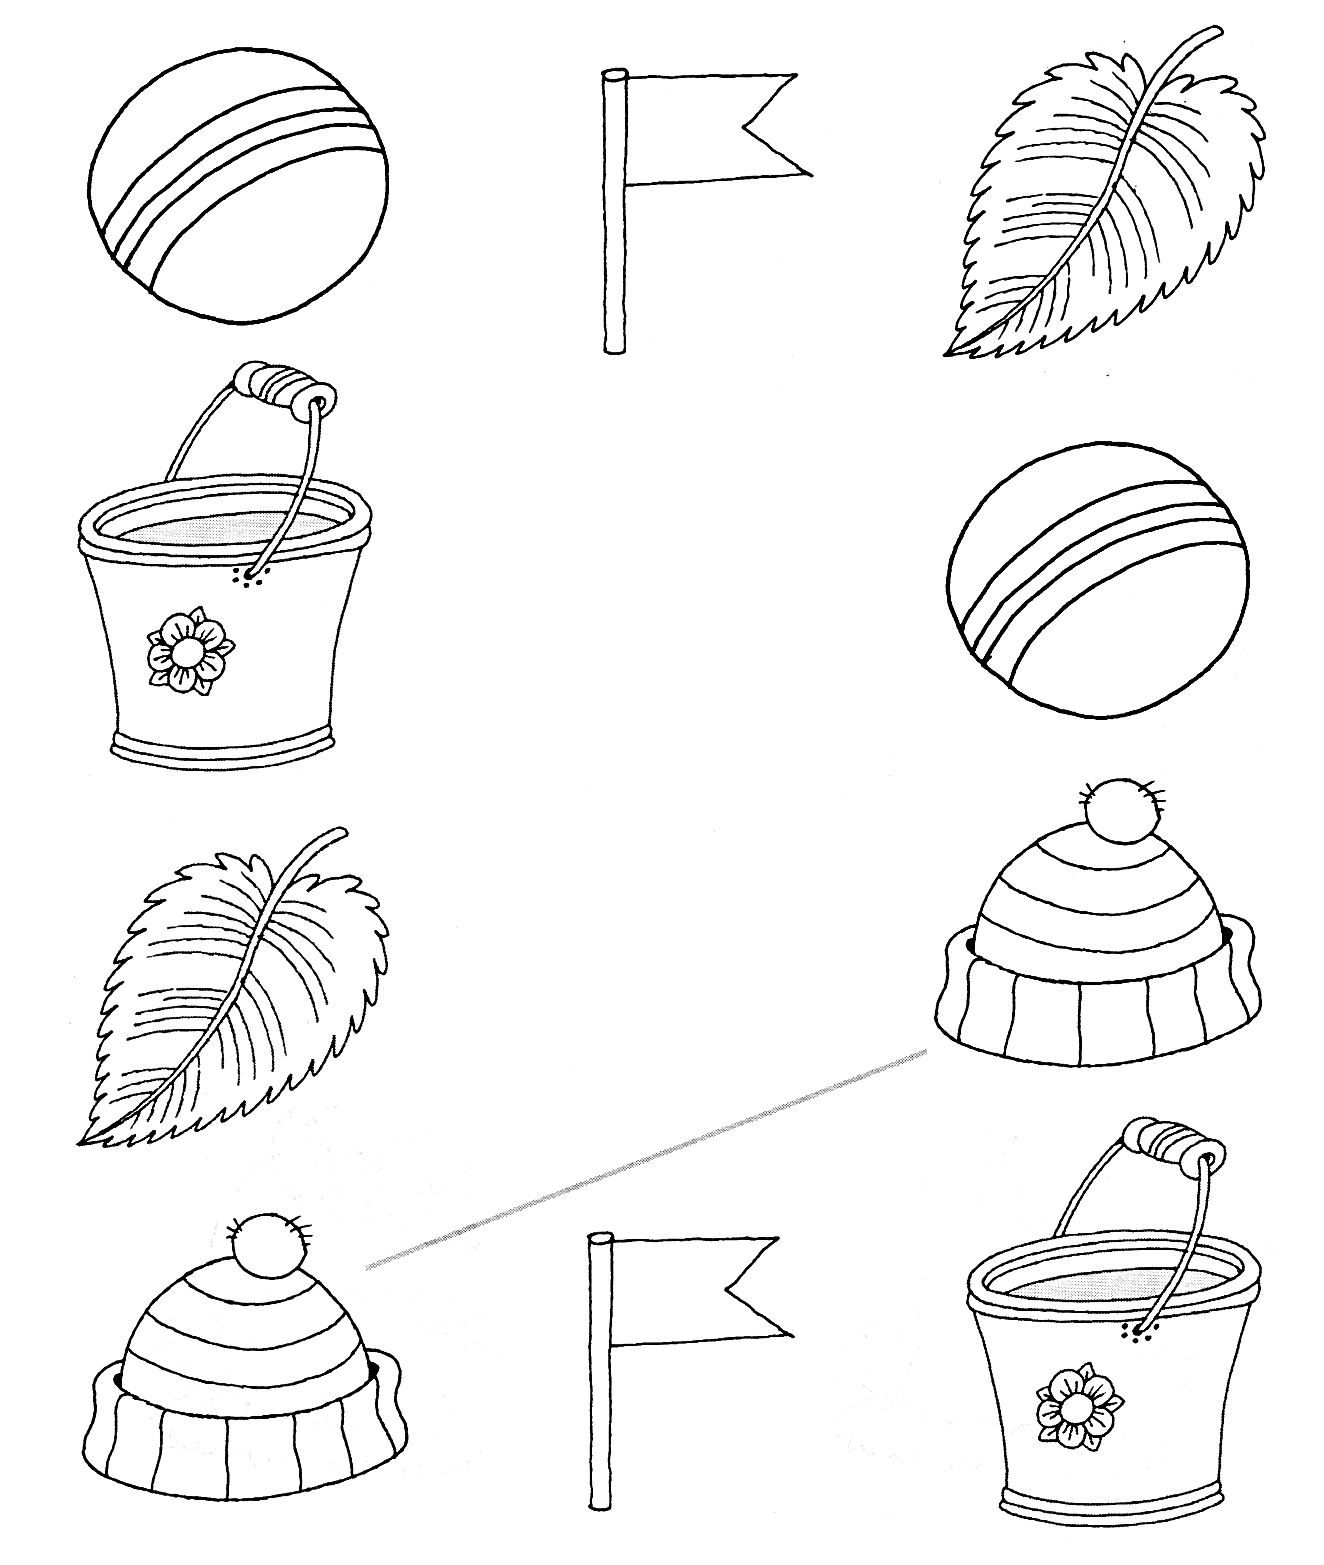 Раскраска Логическая раскраска с мячами, флагами, листьями, ведрами и шапками